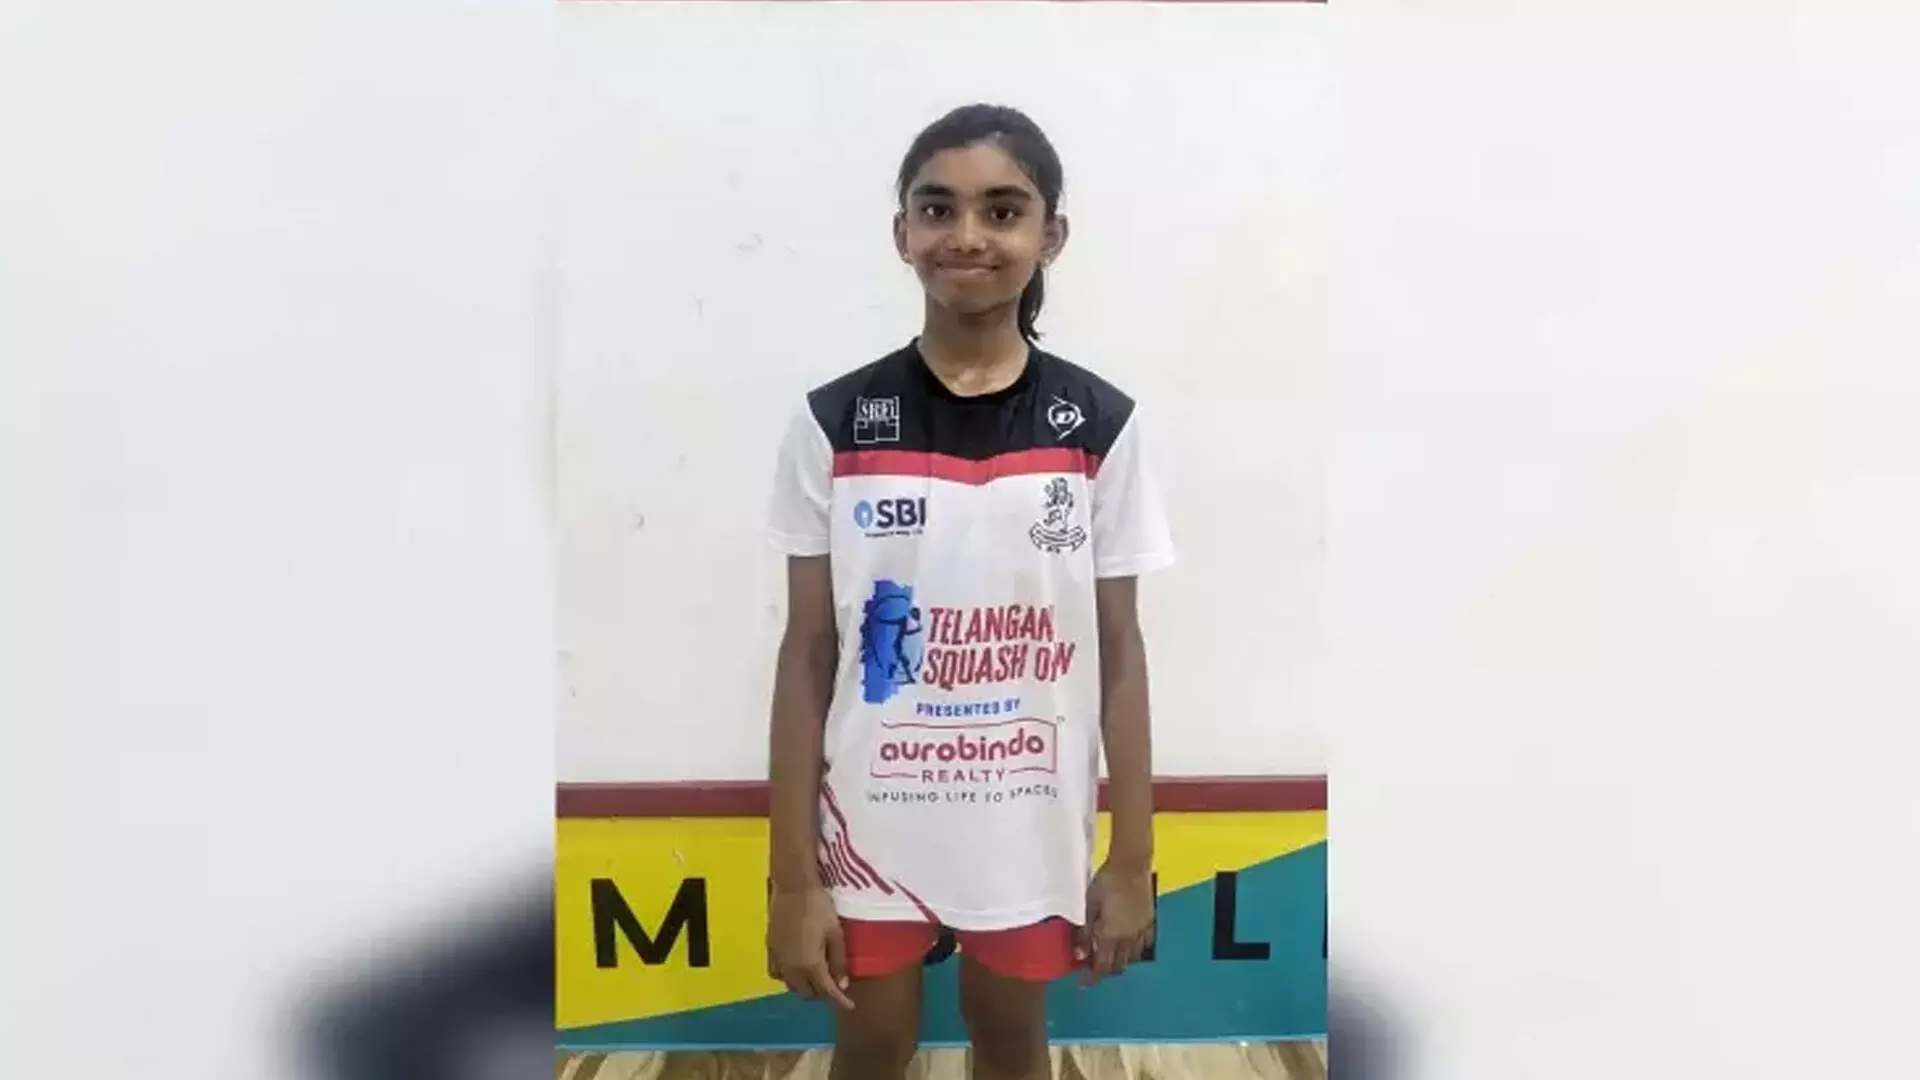 थूथुकुडी की लड़की पाकिस्तान में जूनियर्स स्क्वैश चैंपियनशिप में भारत का प्रतिनिधित्व करेगी